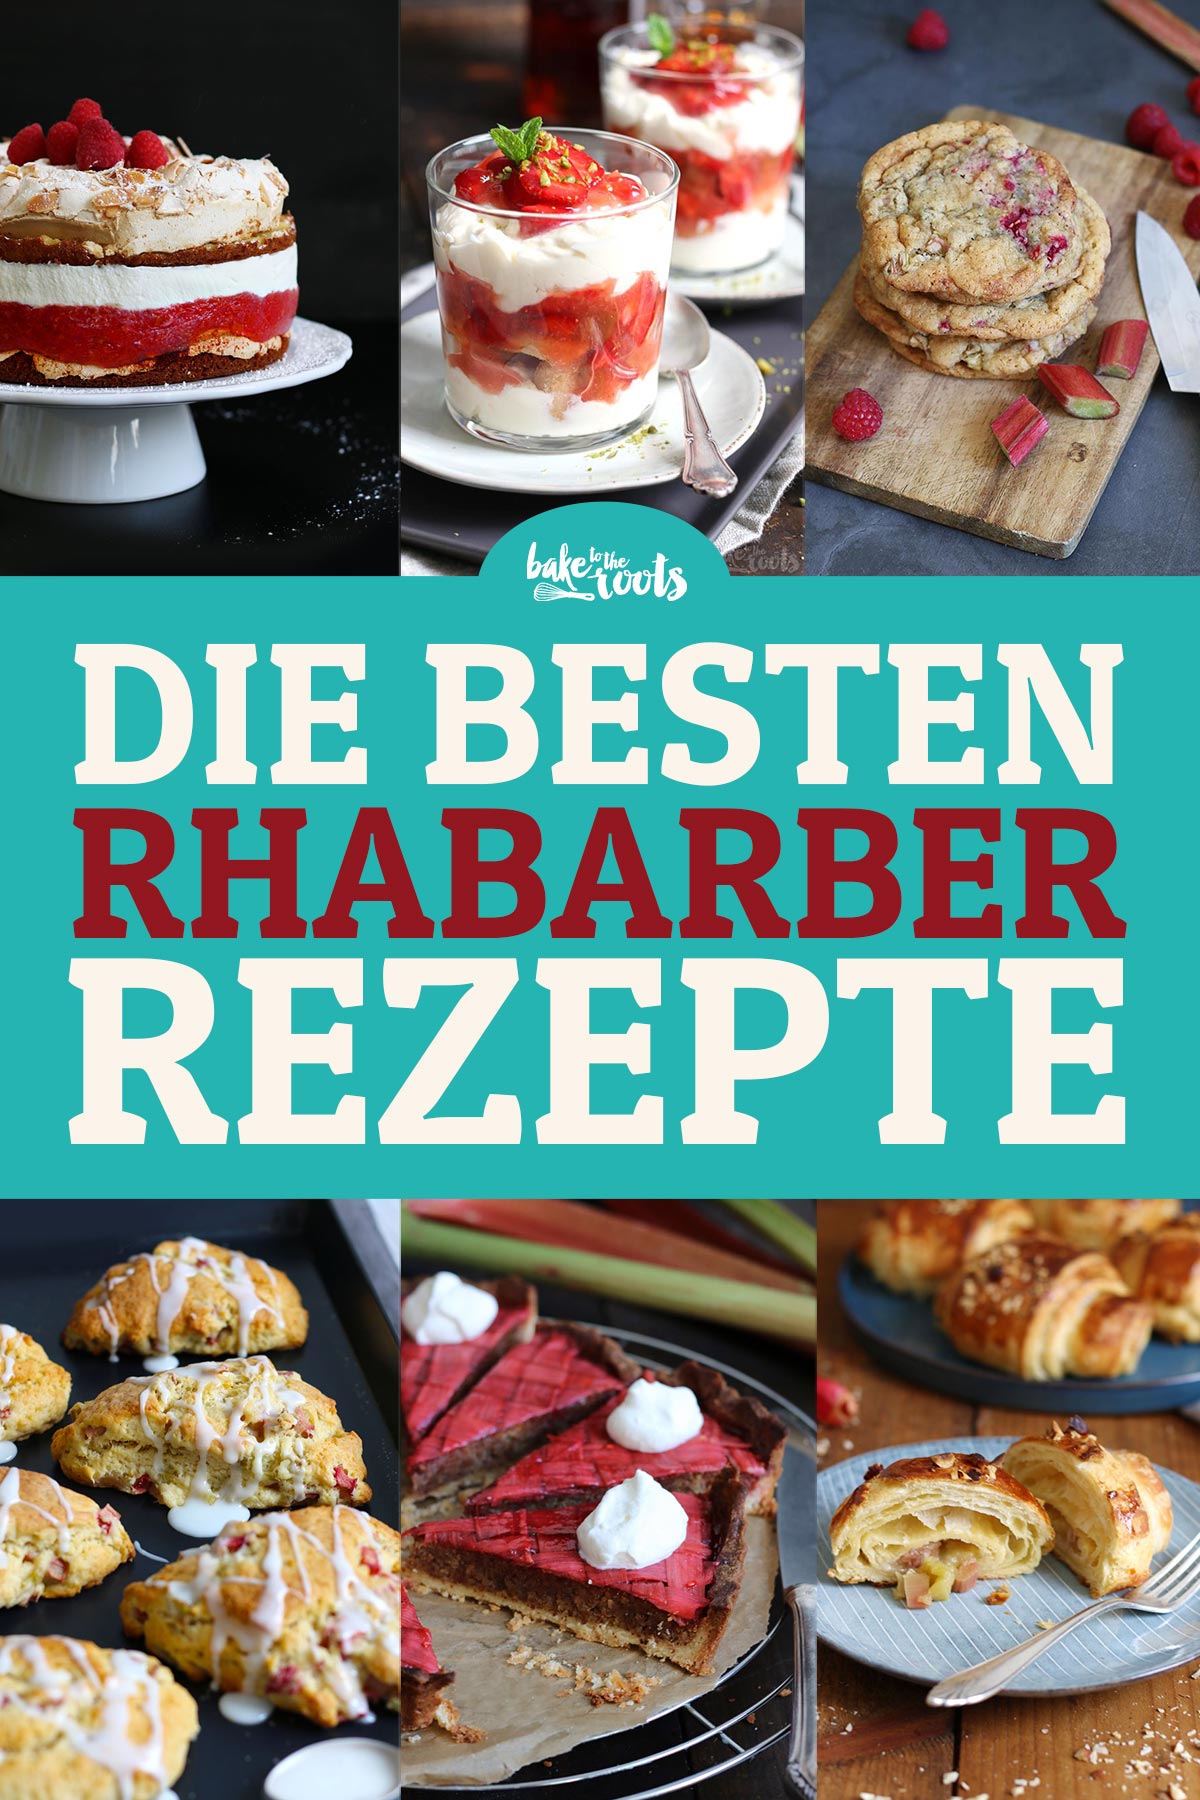 Die Besten Rhabarber Rezepte | Bake to the roots